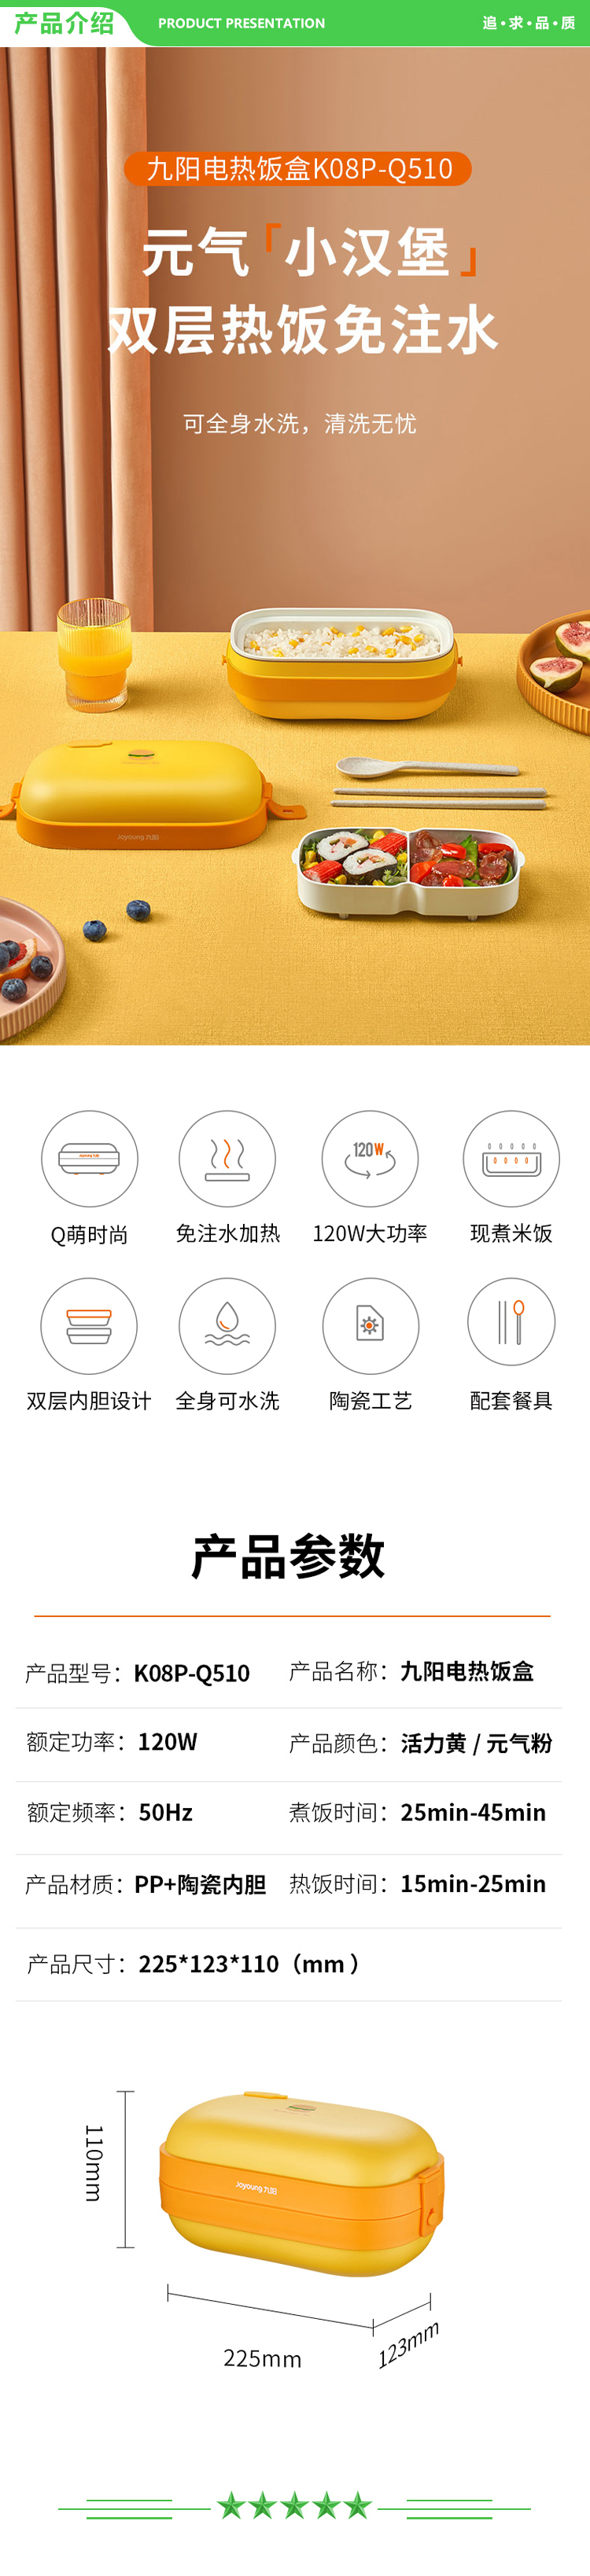 九阳 Joyoung K08P-Q510(A) 电热饭盒.jpg